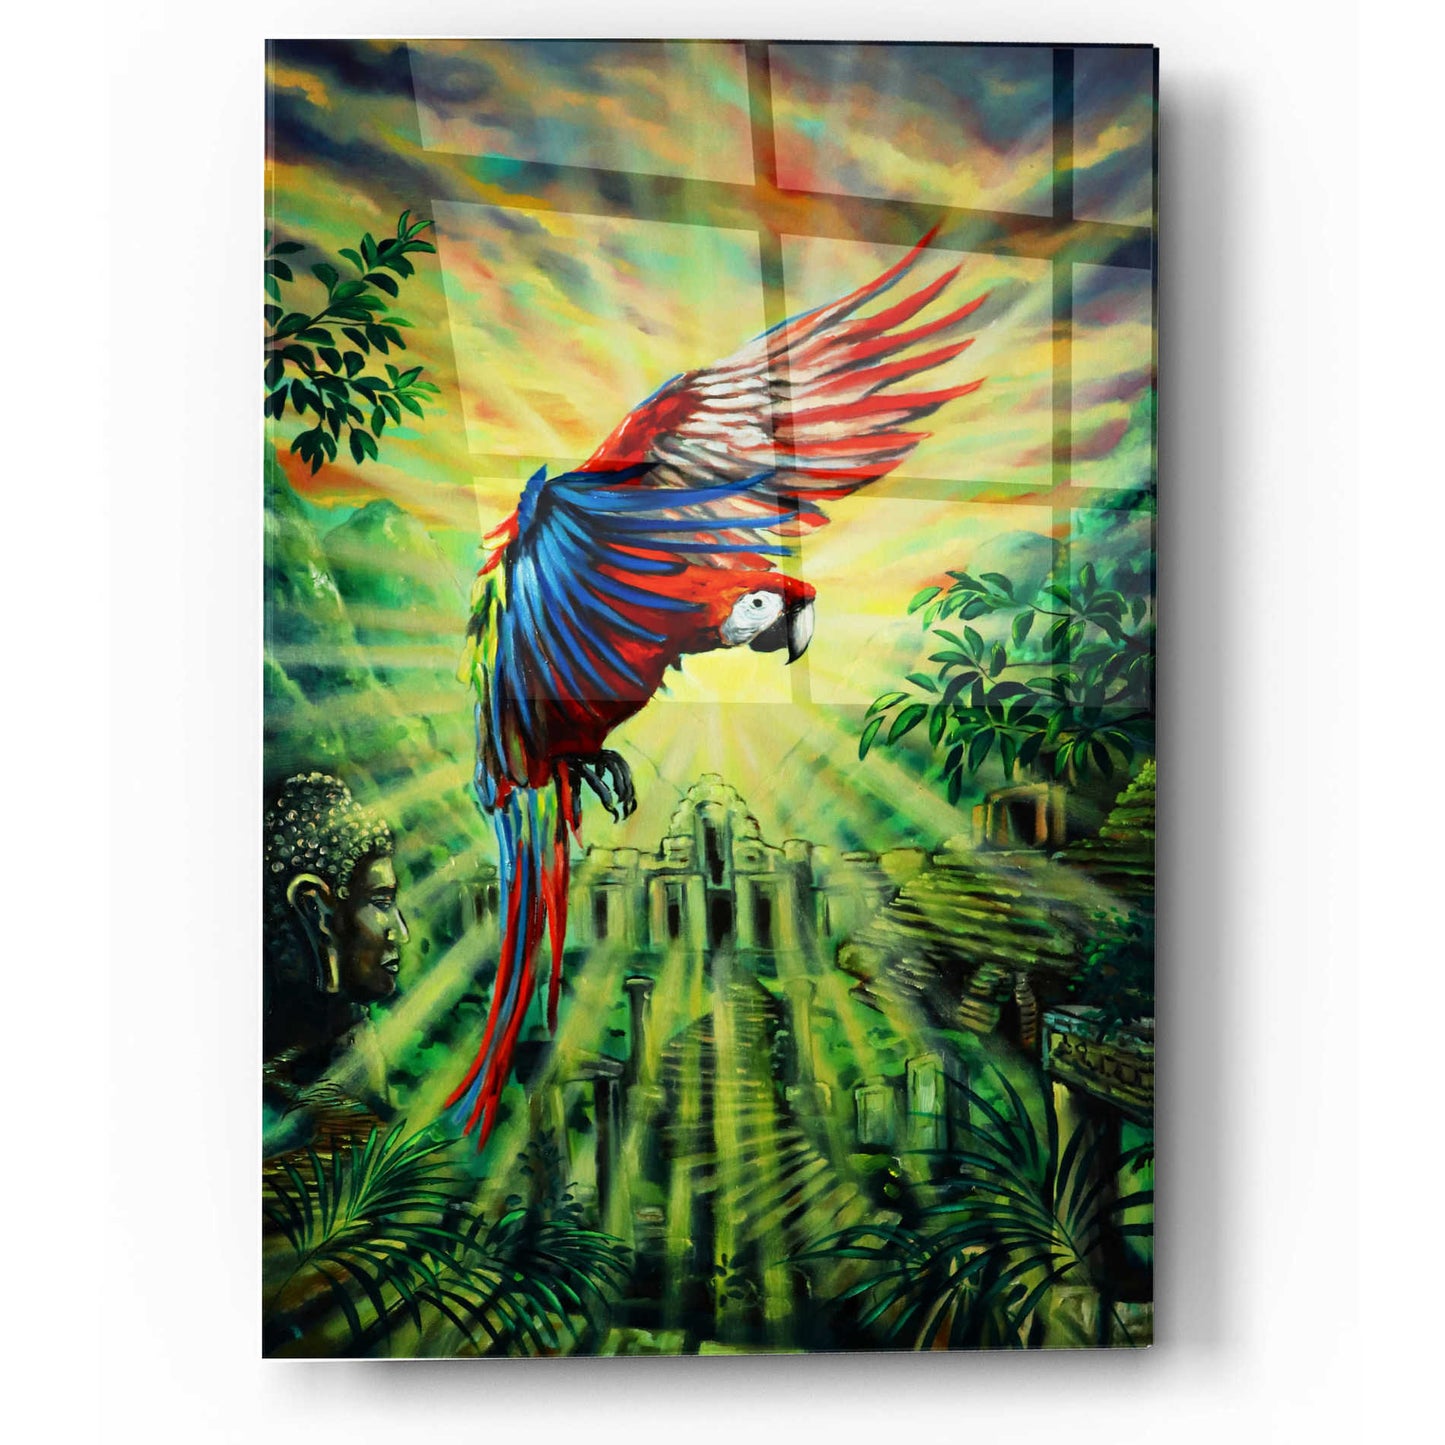 Epic Art 'Parrot Temple' by Jan Kasparec, Acrylic Glass Wall Art,12x16